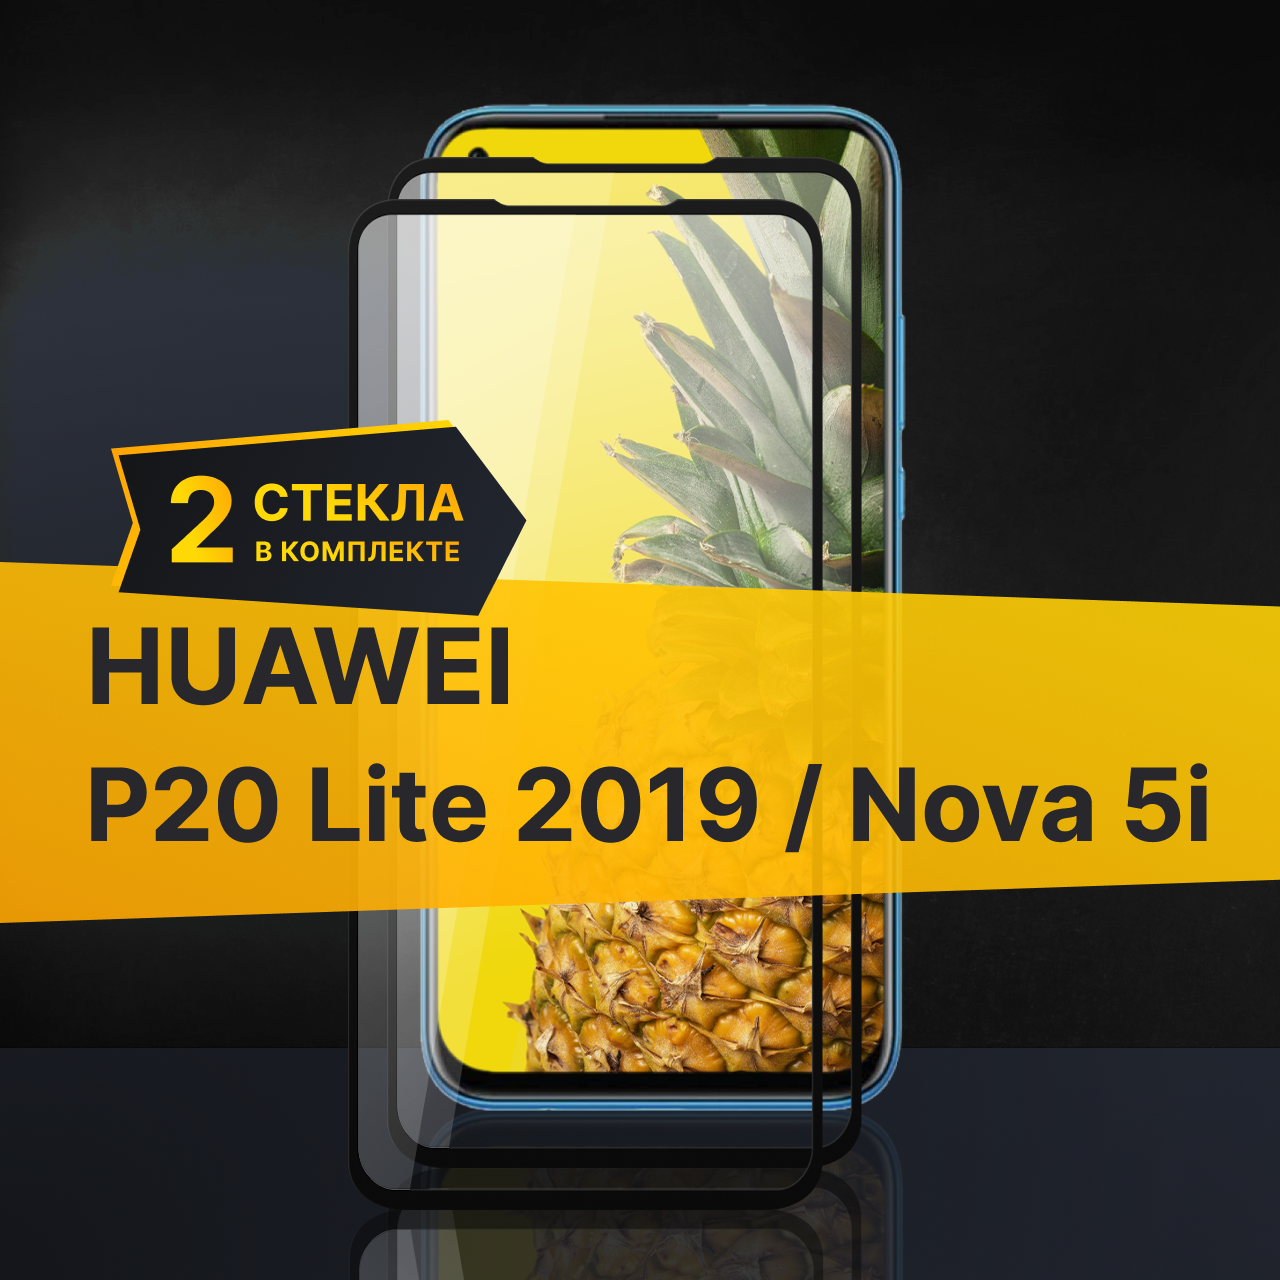 Противоударное защитное стекло для телефона Huawei Nova 5i и P20 lite 2019 / 3D стекло с олеофобным покрытием на Хуавей Нова 5 ай и П20 Лайт 2019